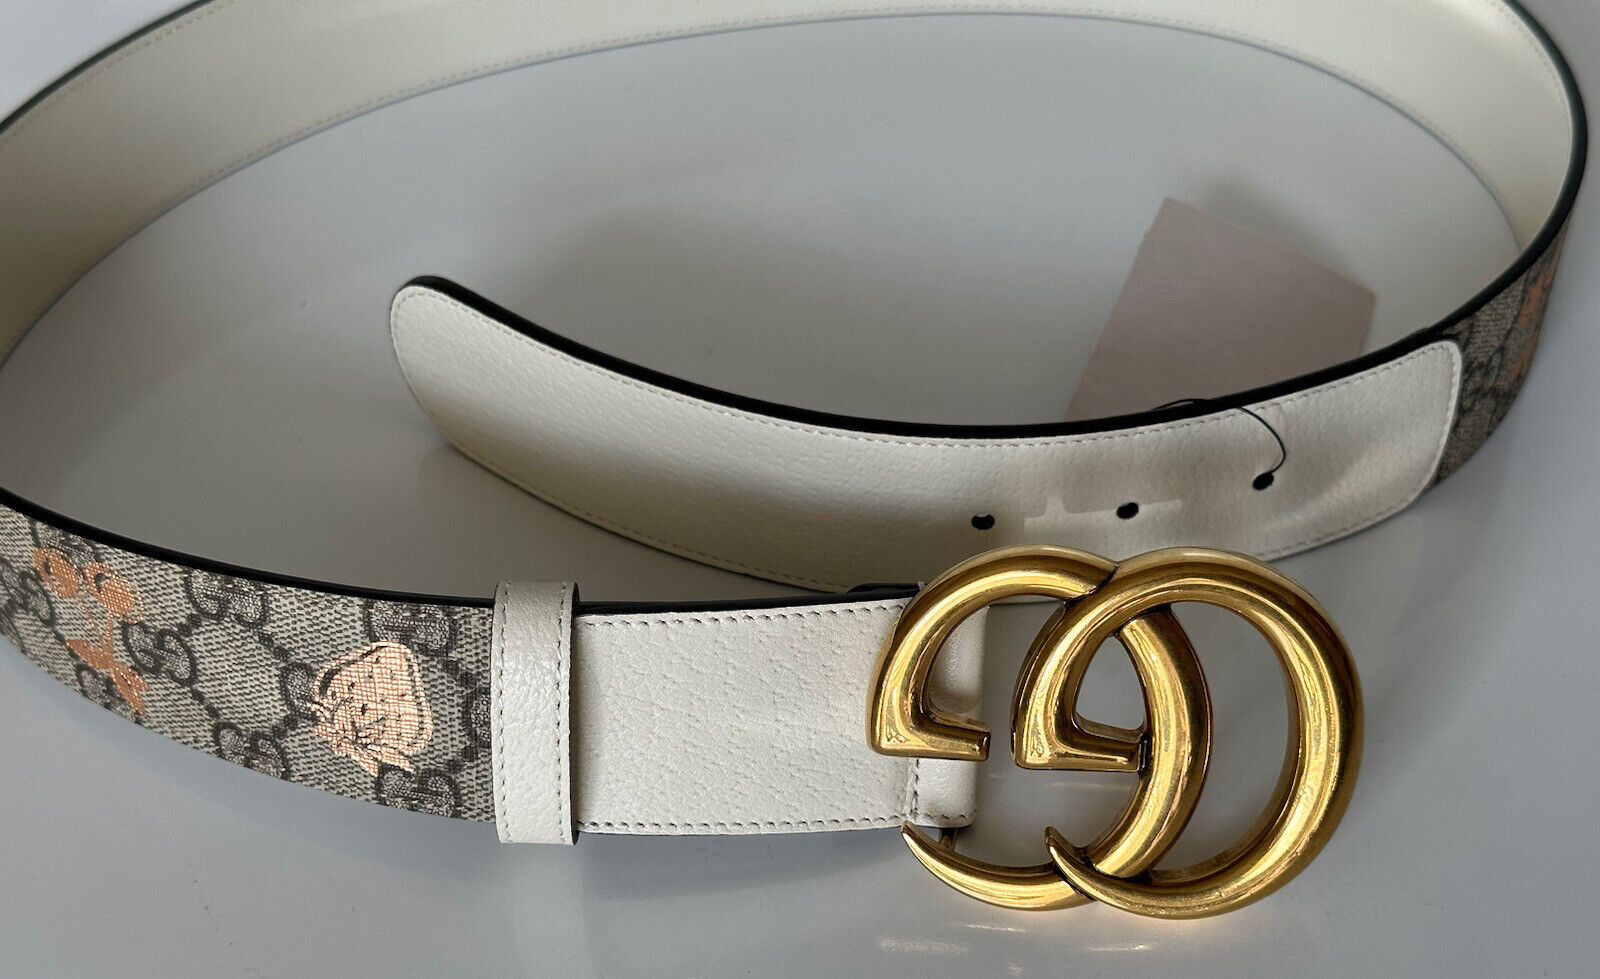 Neu mit Etikett Gucci Damen GG Marmont Ledergürtel Braun 90/36 Italien 400593 